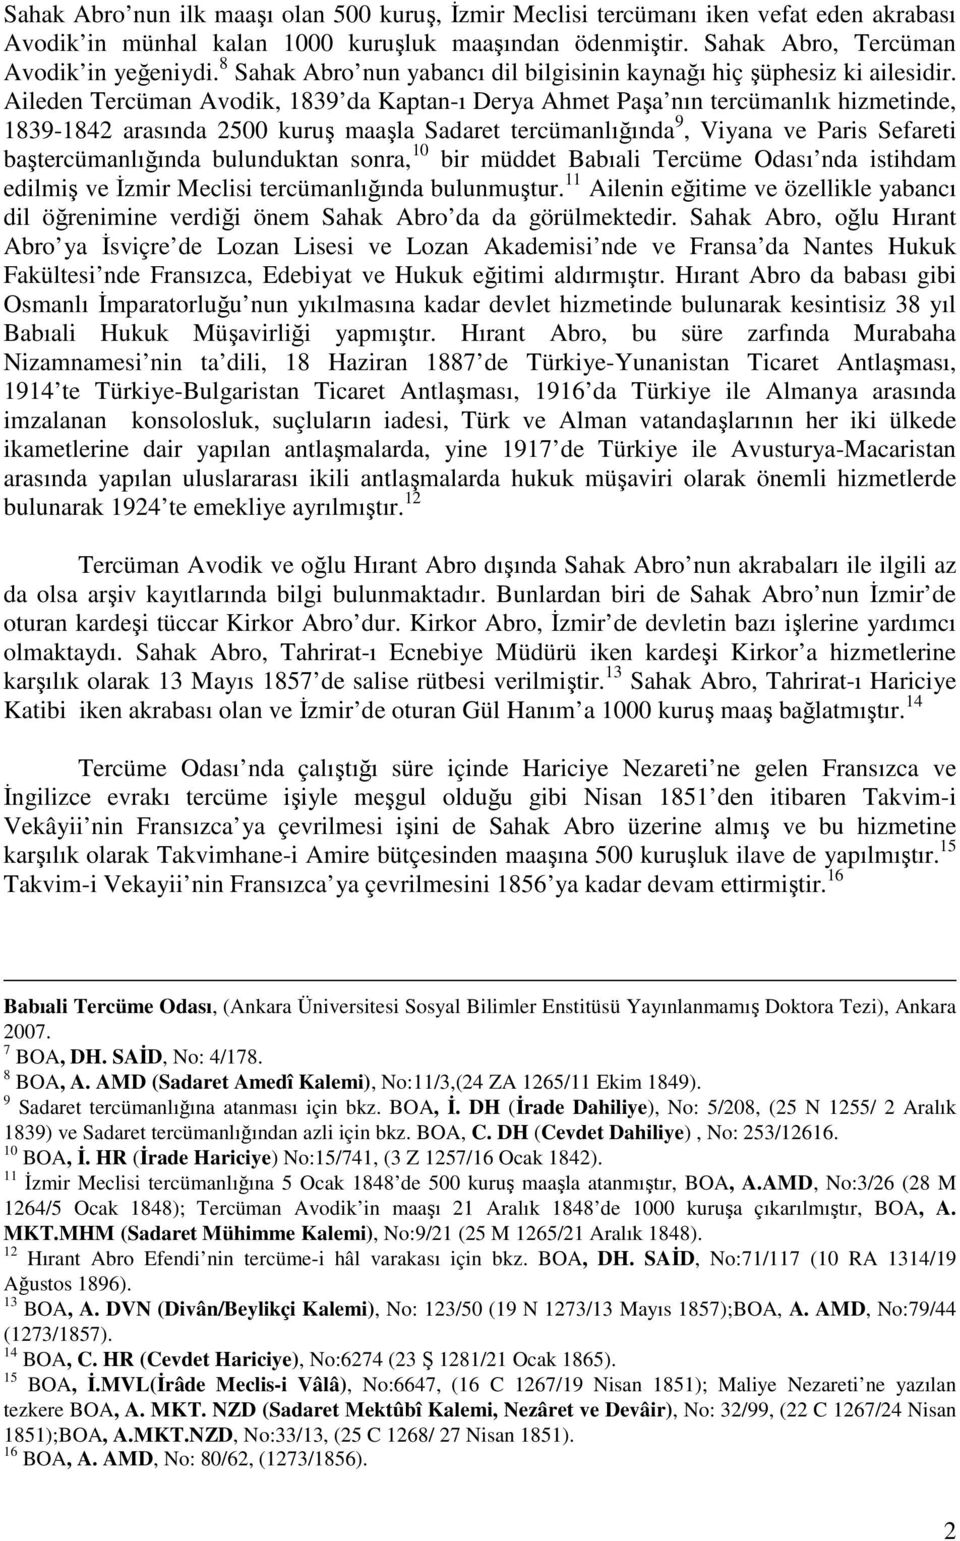 Aileden Tercüman Avodik, 1839 da Kaptan-ı Derya Ahmet Paşa nın tercümanlık hizmetinde, 1839-1842 arasında 2500 kuruş maaşla Sadaret tercümanlığında 9, Viyana ve Paris Sefareti baştercümanlığında